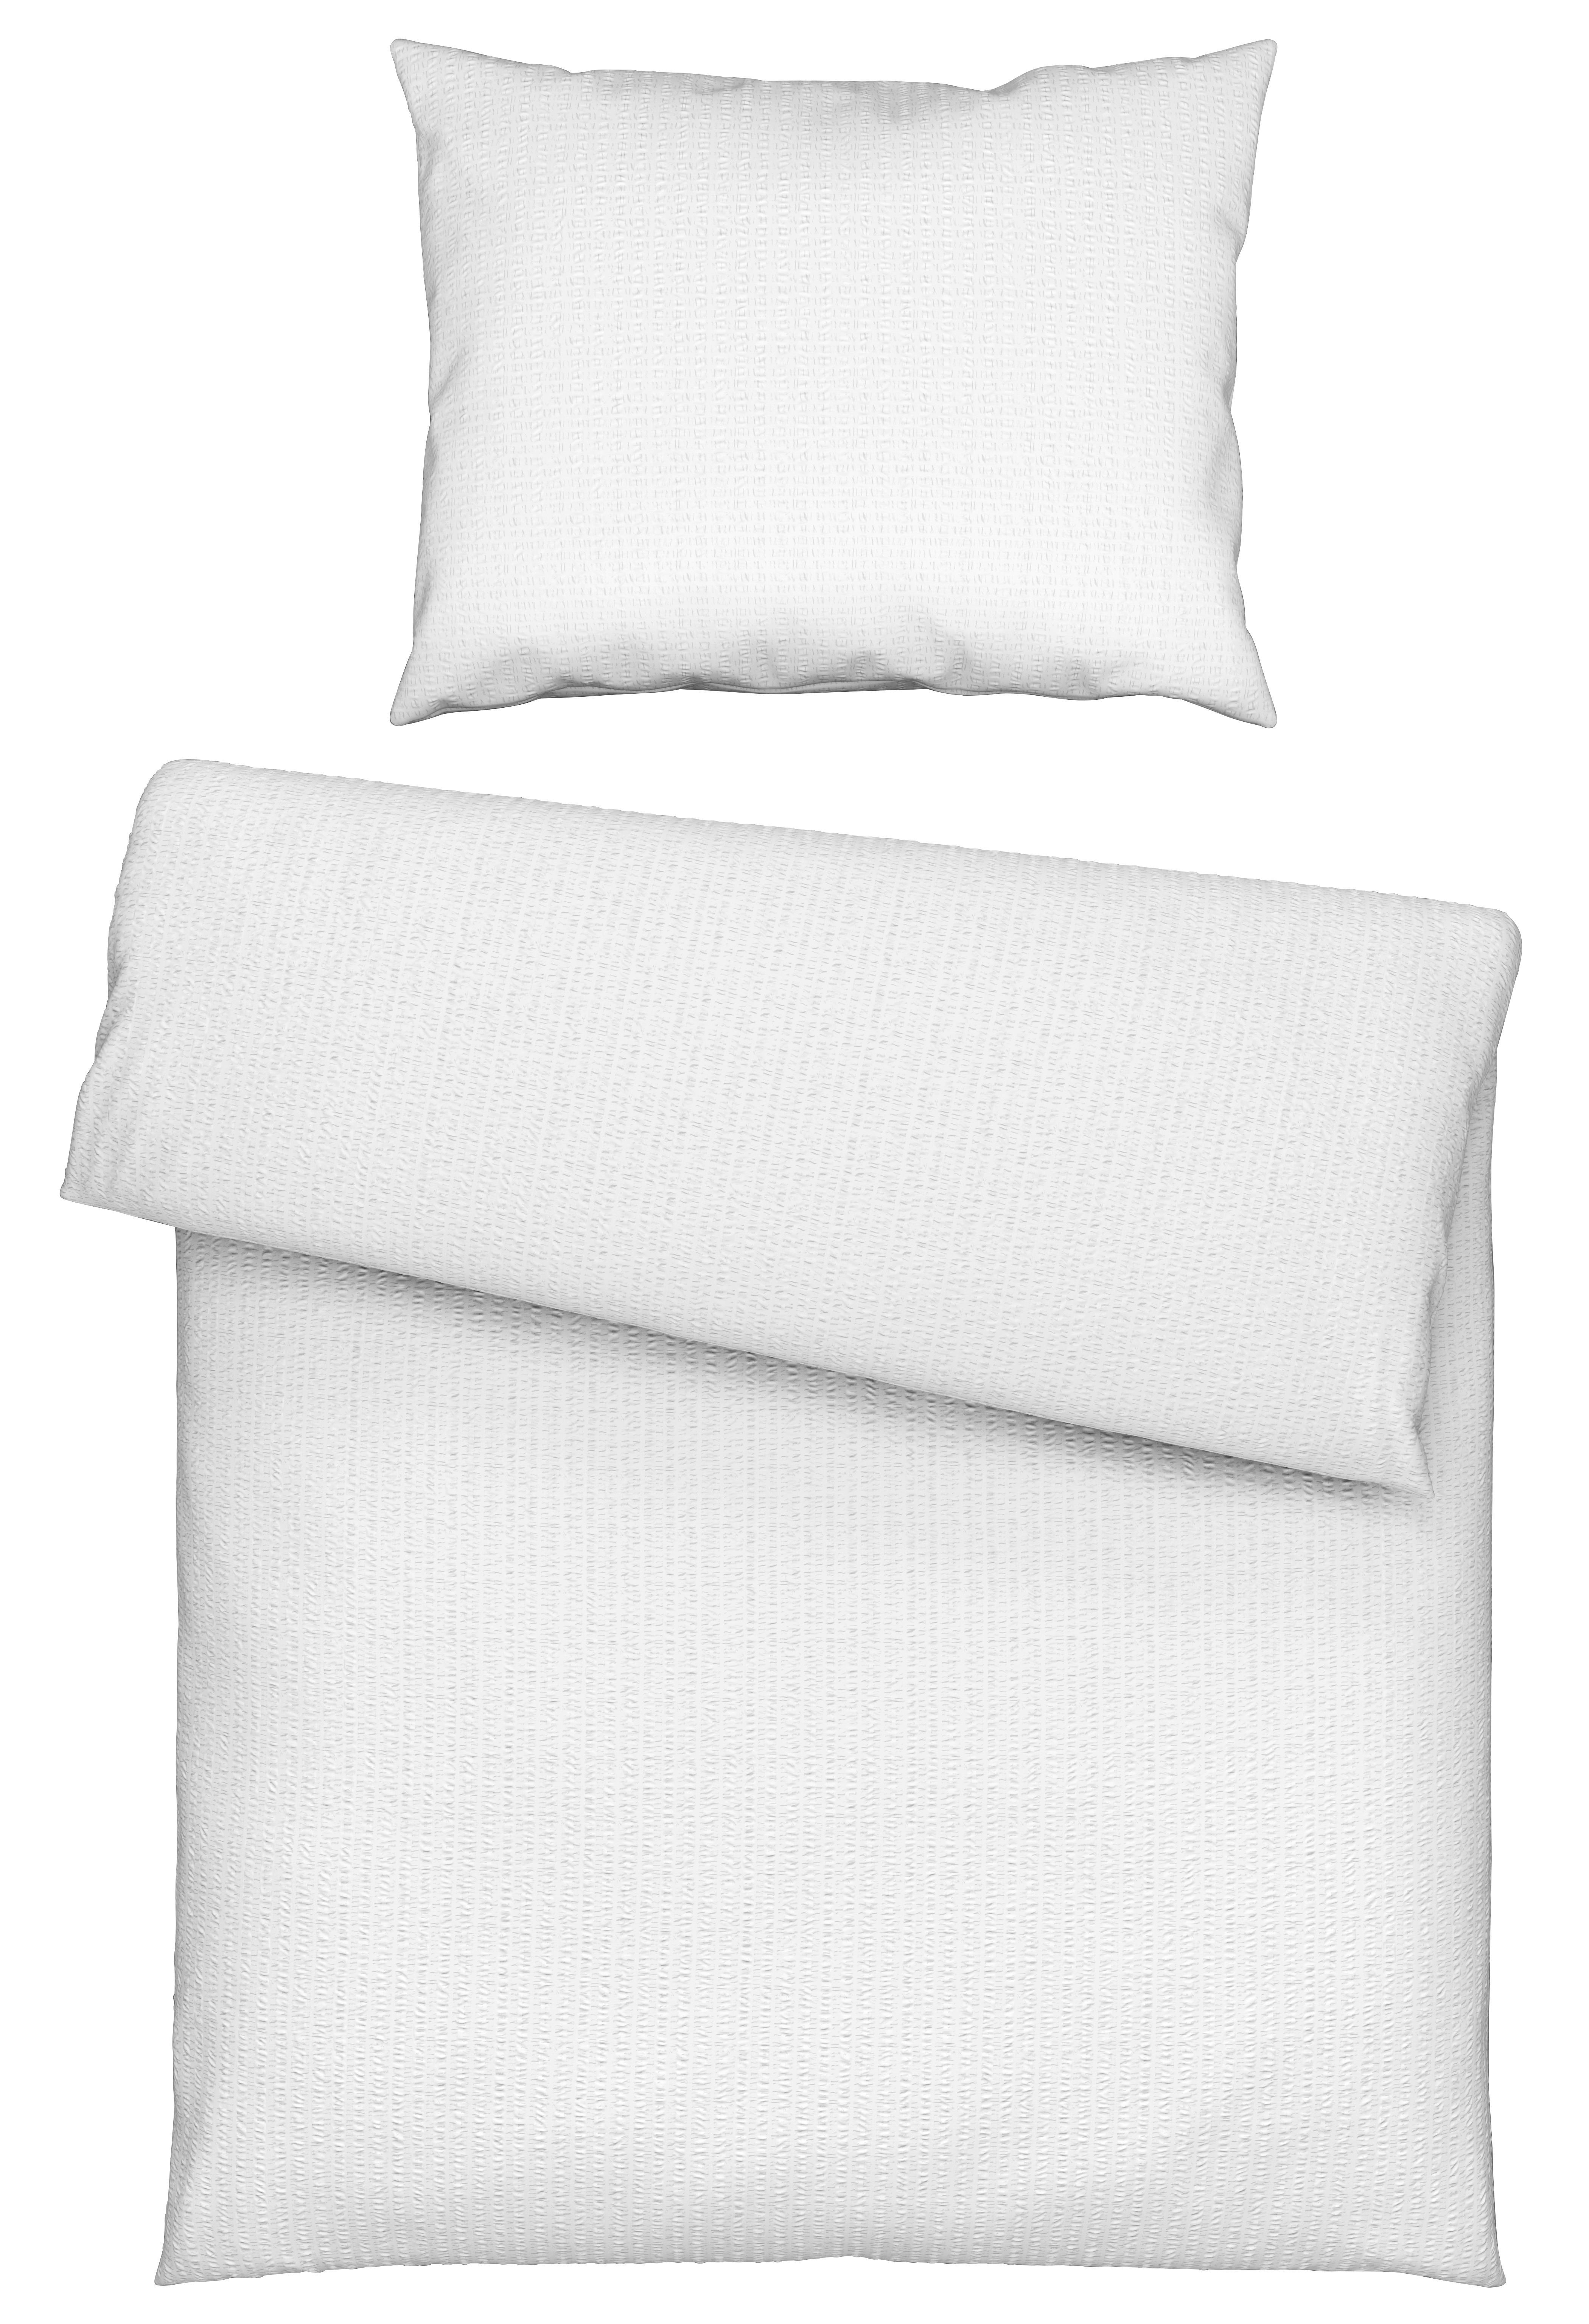 Bettwäsche Gisi in Weiß ca. 140x200cm - Weiß, KONVENTIONELL, Textil (140/200cm) - Modern Living